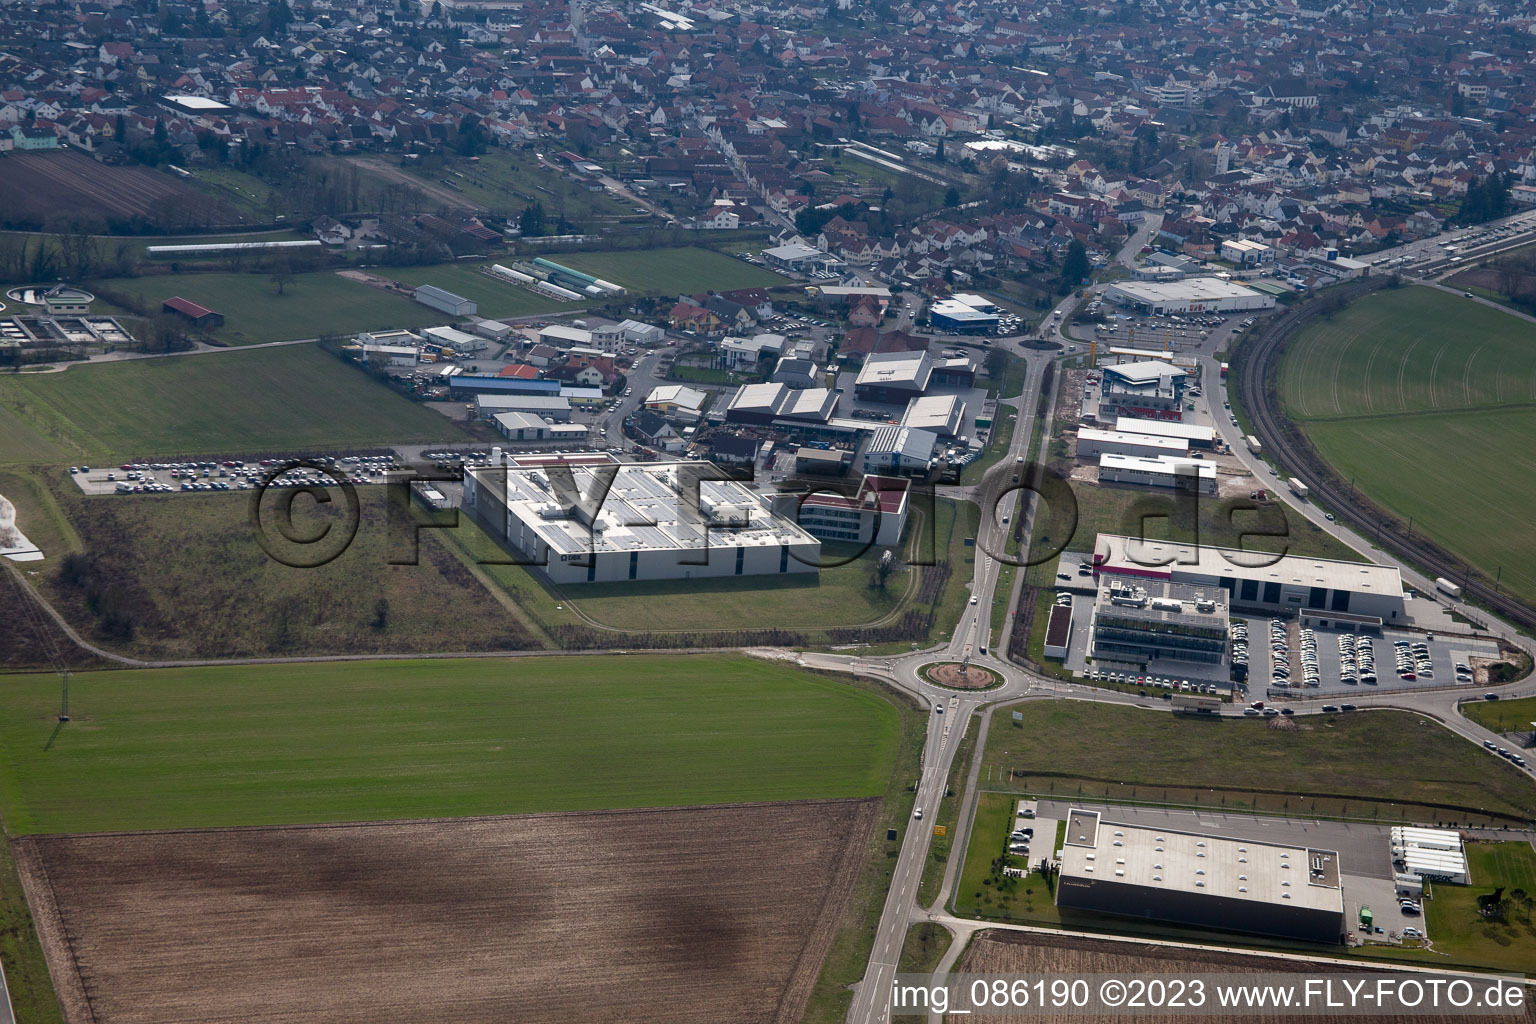 Rülzheim im Bundesland Rheinland-Pfalz, Deutschland aus der Luft betrachtet